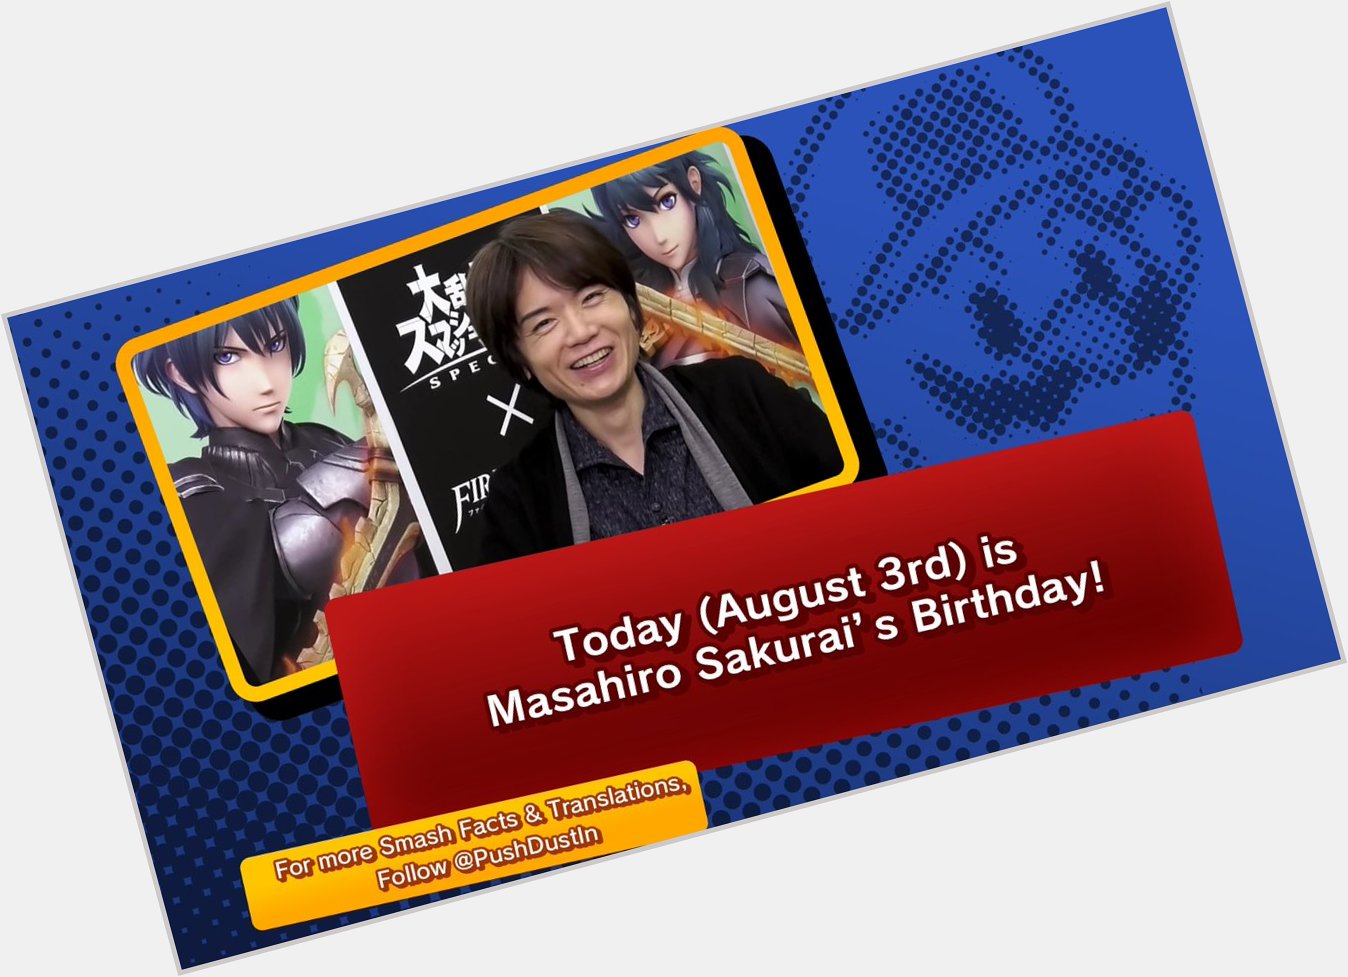 {Happy Birthday Old Man!}

Today (August 3rd) is 
Masahiro Sakurai s Birthday! 